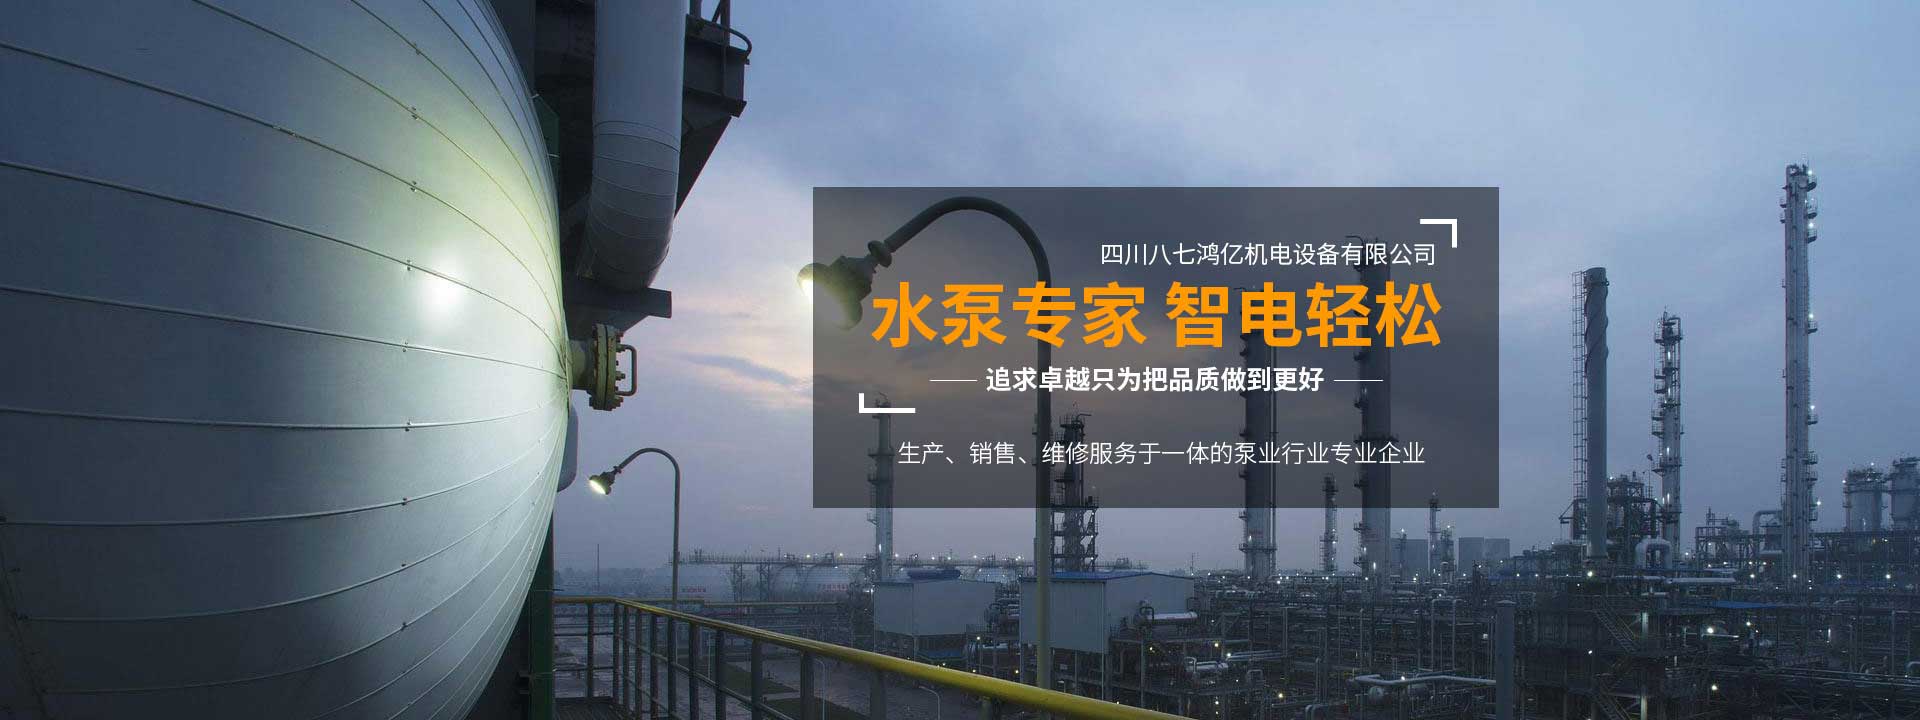 深井潜水电泵哪里买_充油式潜水电泵相关-四川八七鸿亿机电设备有限公司